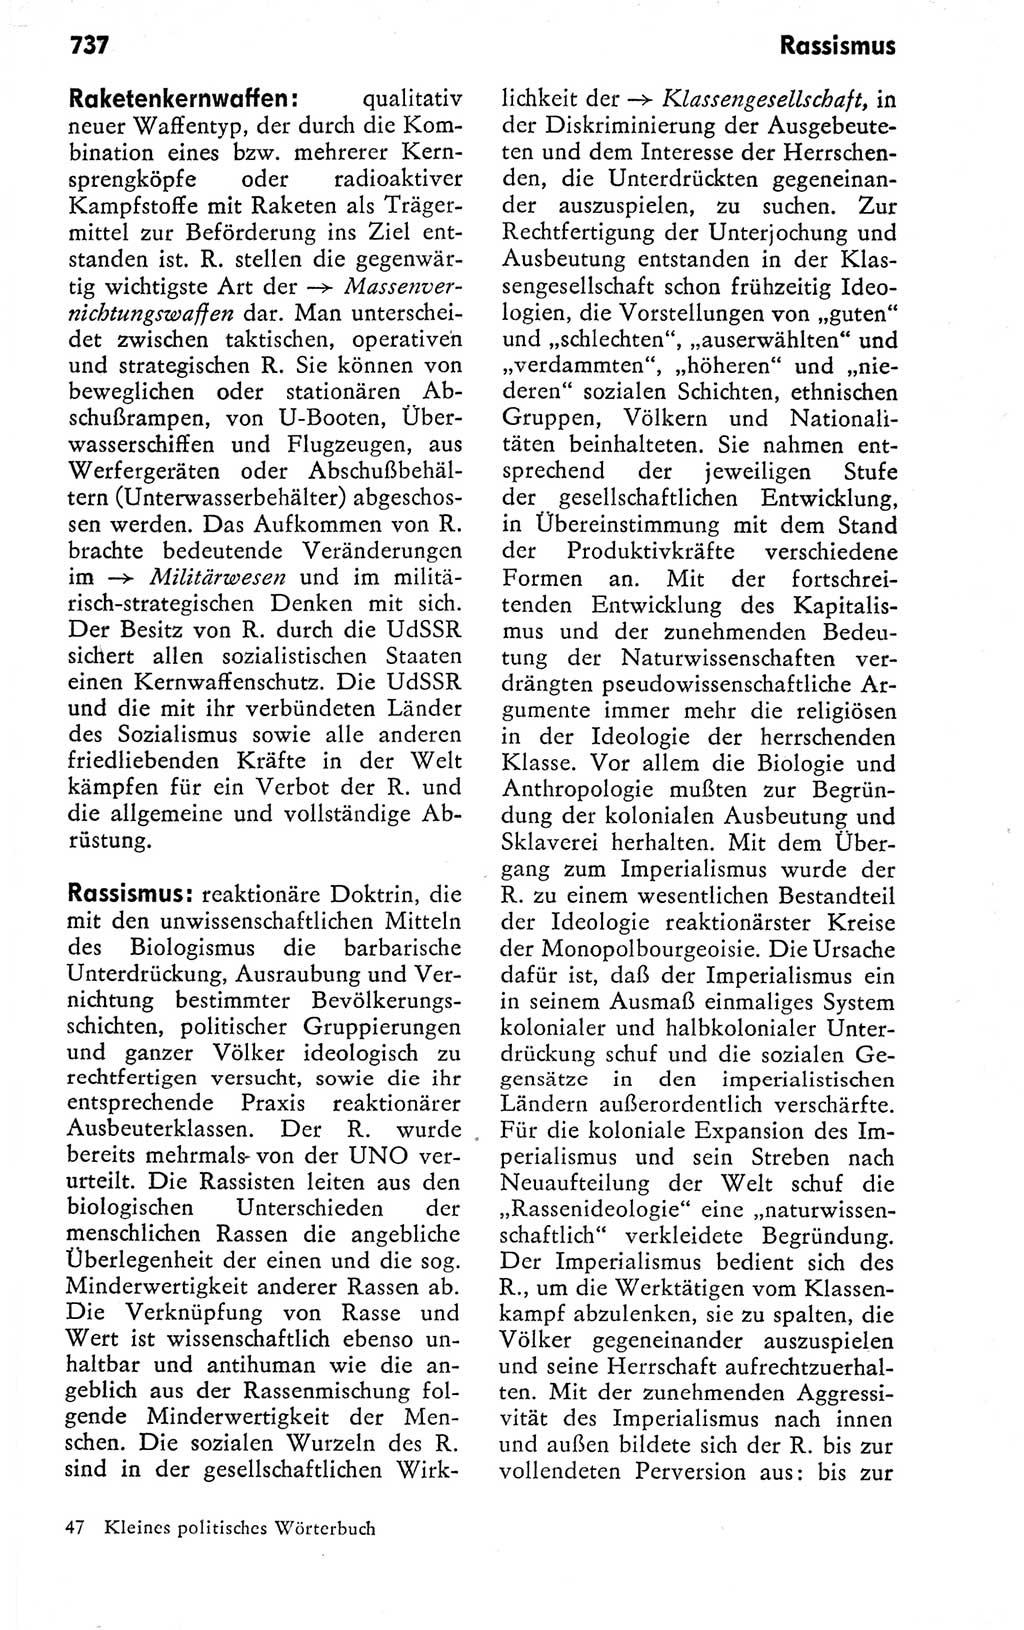 Kleines politisches Wörterbuch [Deutsche Demokratische Republik (DDR)] 1978, Seite 737 (Kl. pol. Wb. DDR 1978, S. 737)